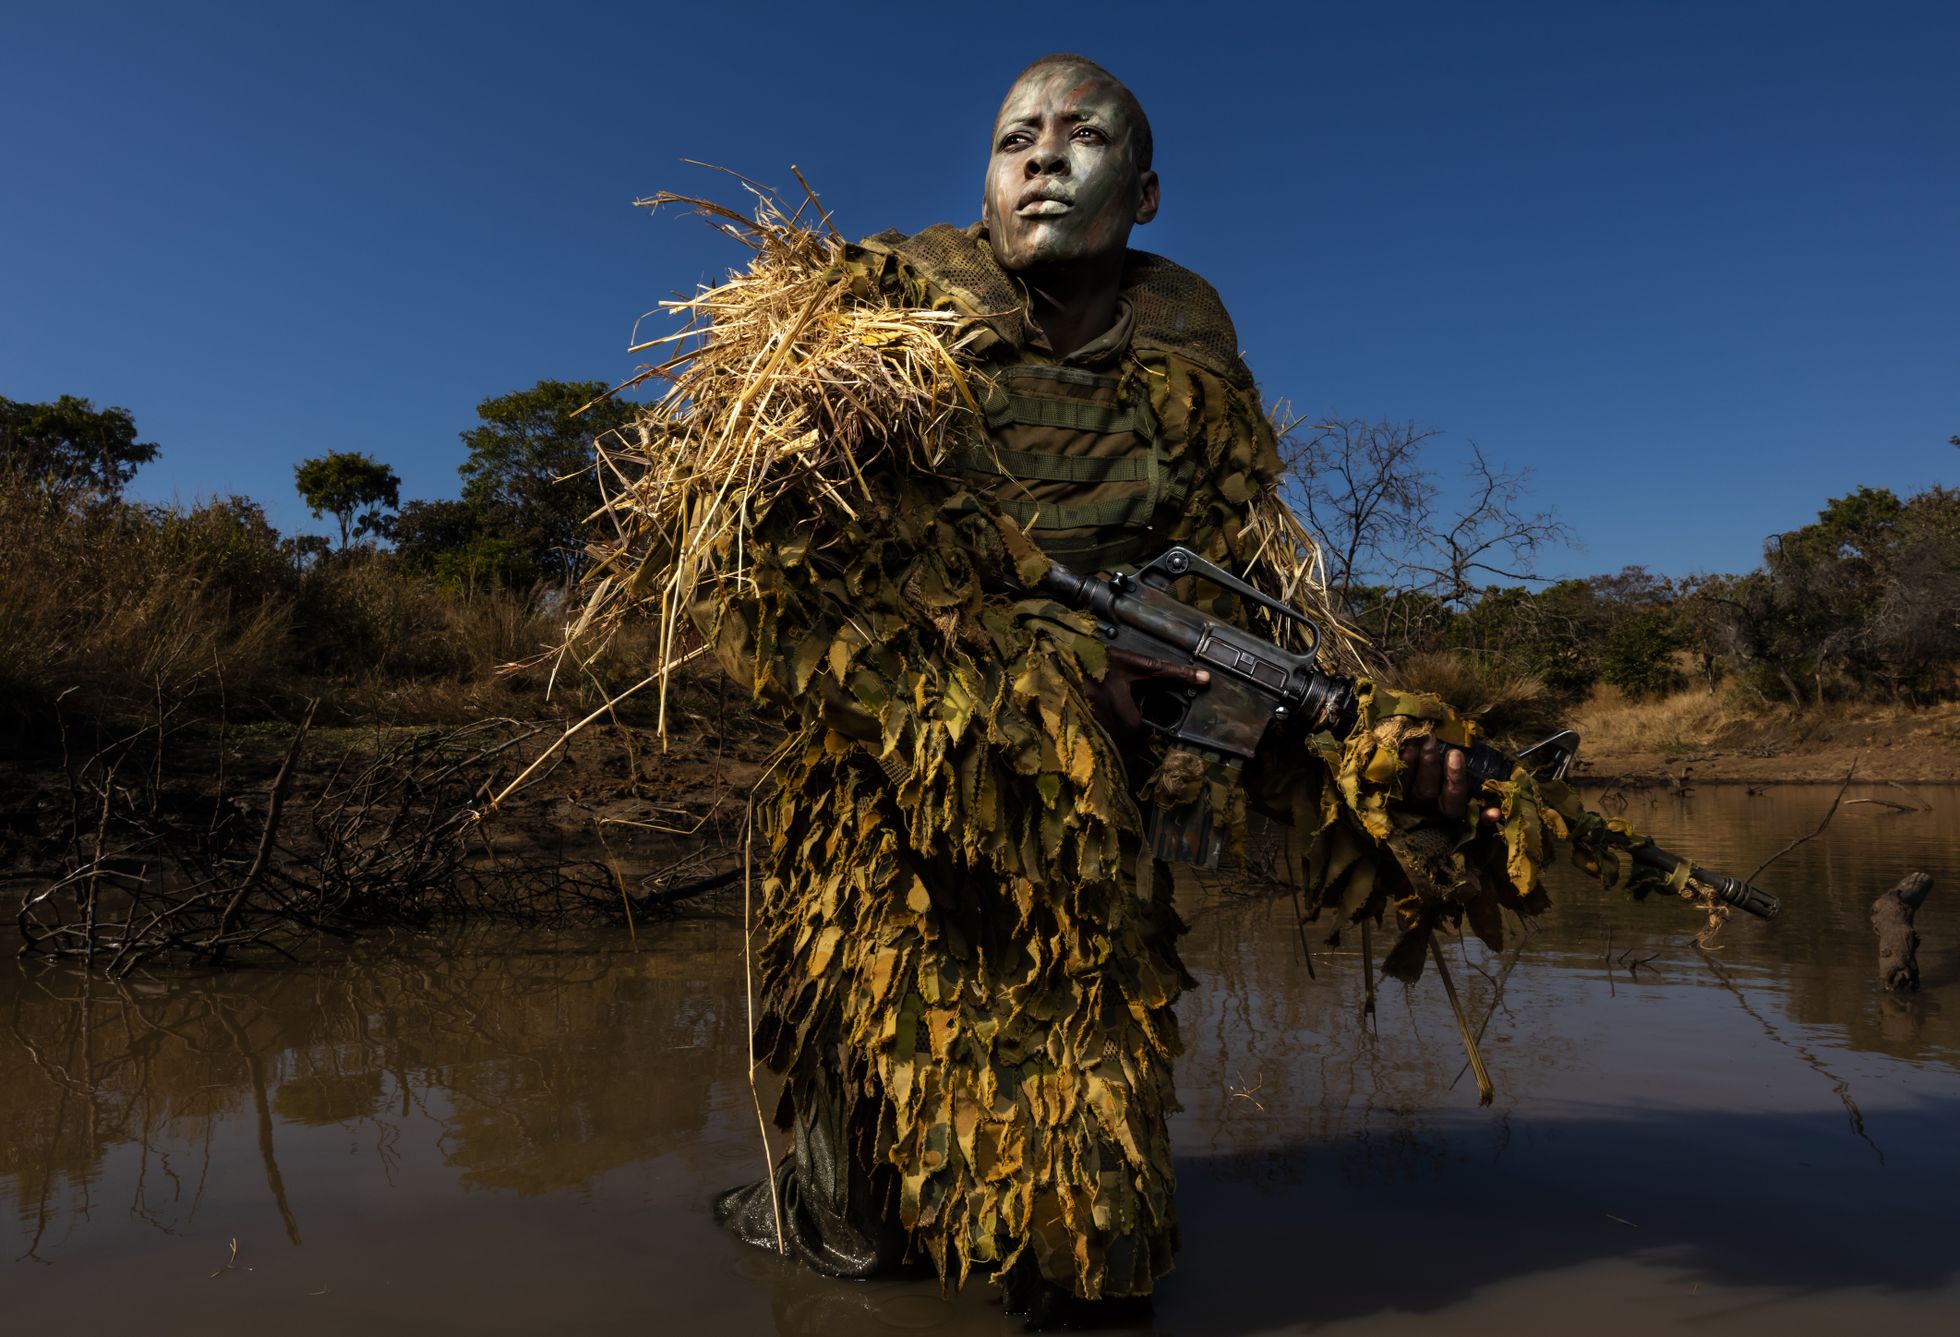 30-aastane Petronella Chigumbura, kes on ainult naistest koosneva salaküttide vastase üksuse Akashinga liige, osalemas varjumise õppustel Phundundu rahvuspargis Zimbabwes.